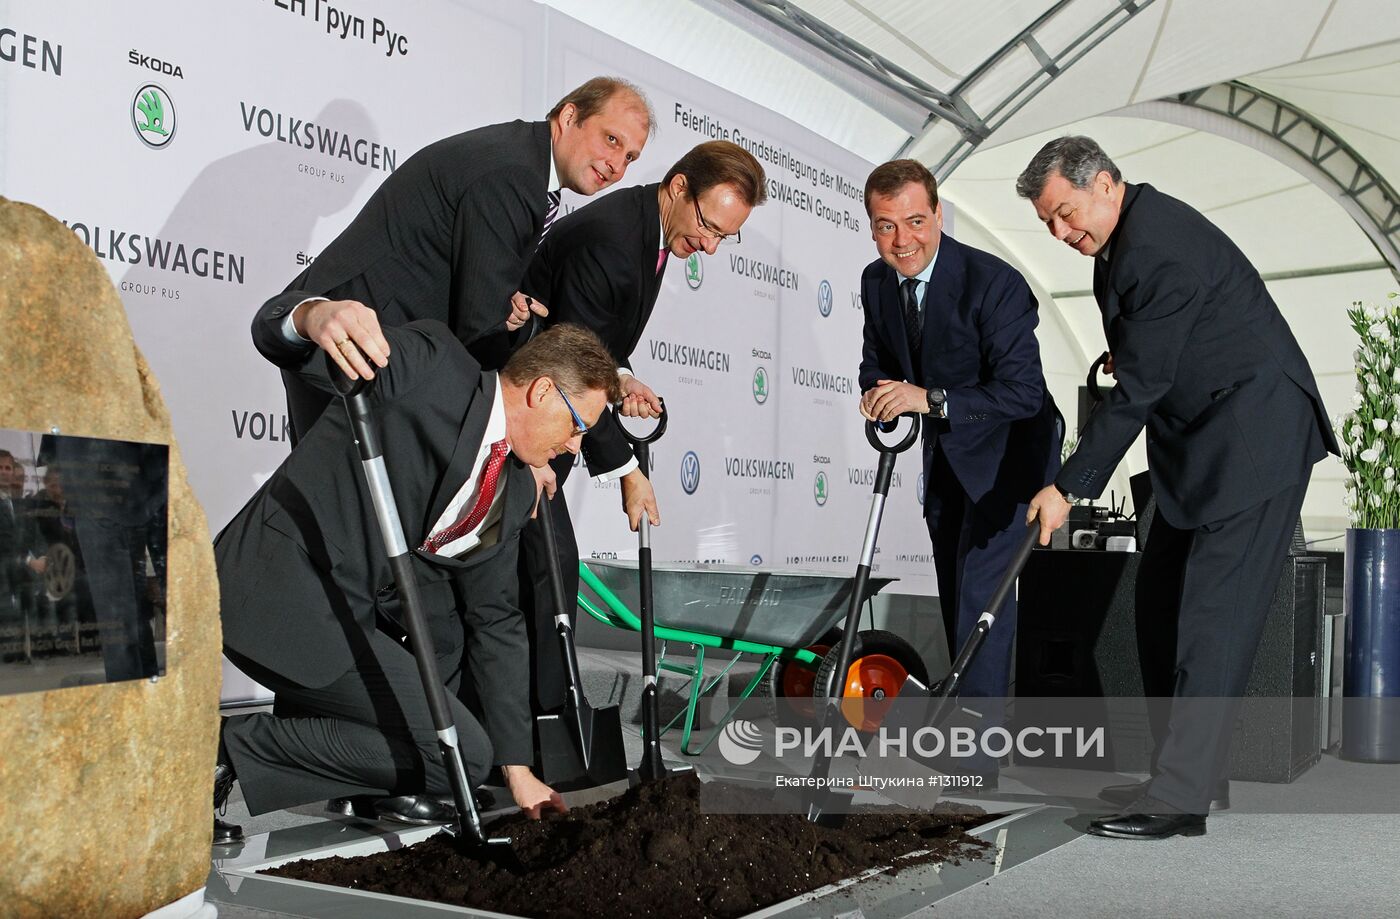 Д.Медведев участвовал в закладке завода двигателей